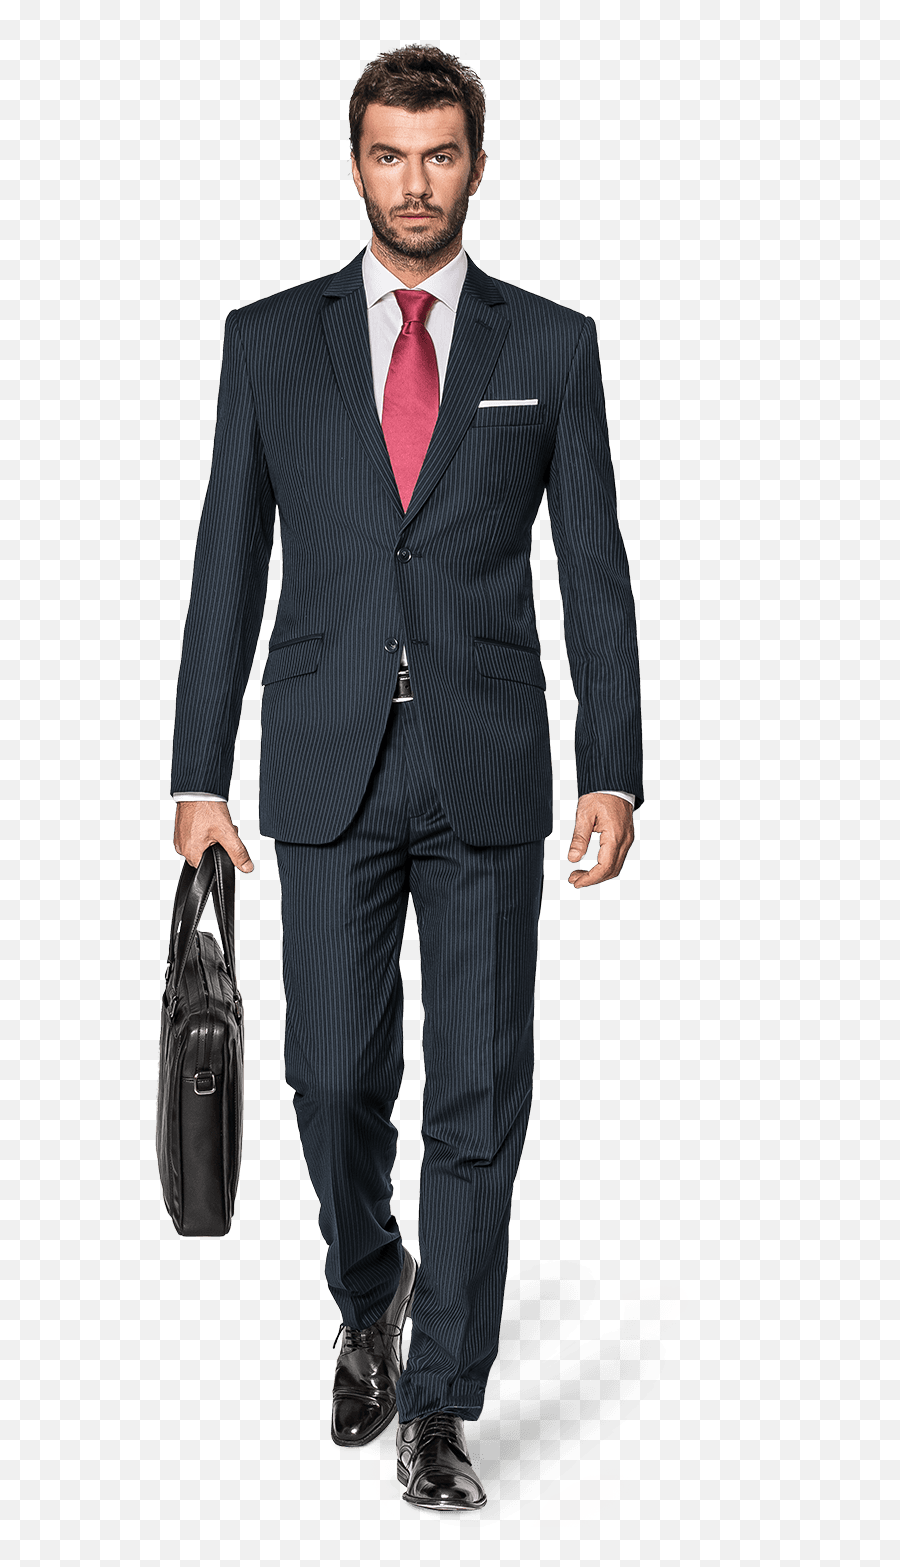 Suit Clipart Tailor Suit - Dad And Son In Suit Transparent Airplane Pilot Clipart Emoji,Suit Clipart